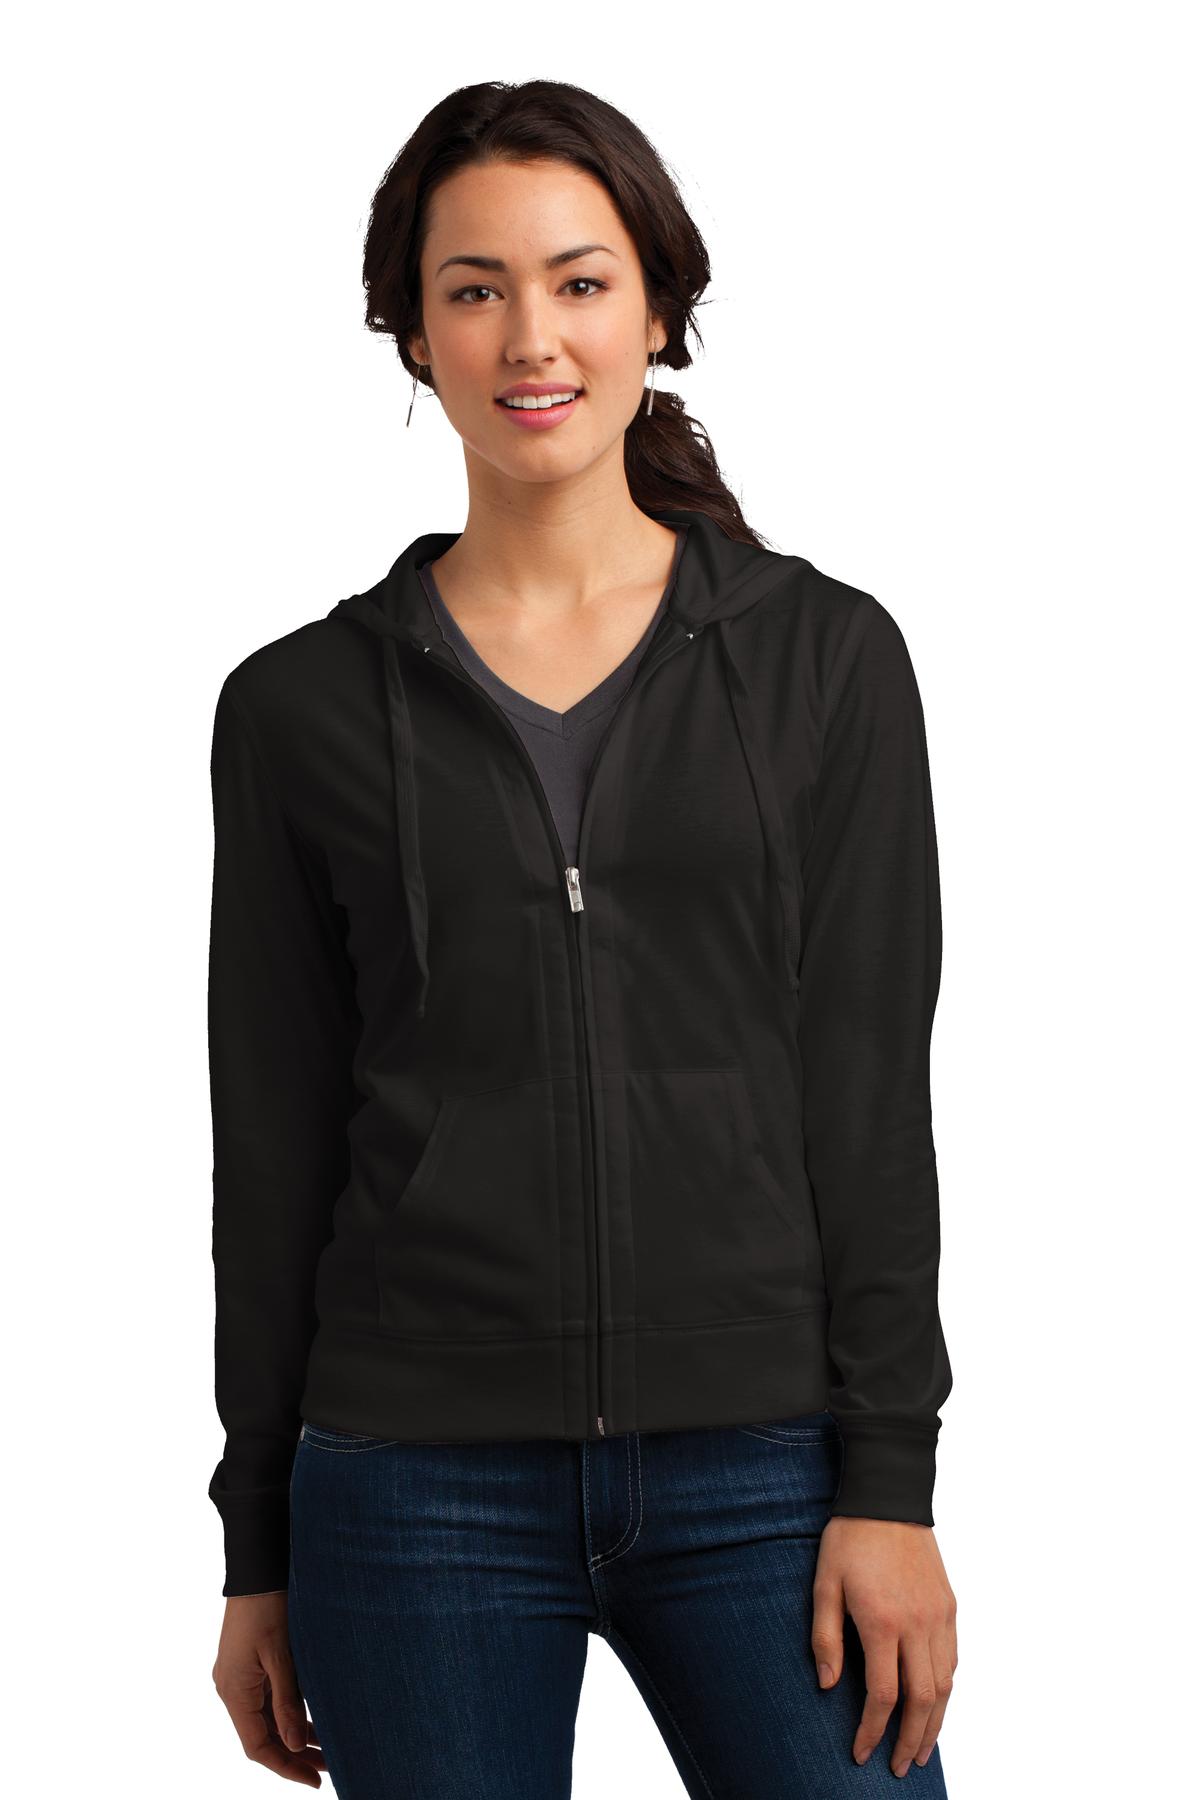 Uni Clau Women/'s Jersey Full Zip Hoodie Sweatshirt Active Jacket with Pockets